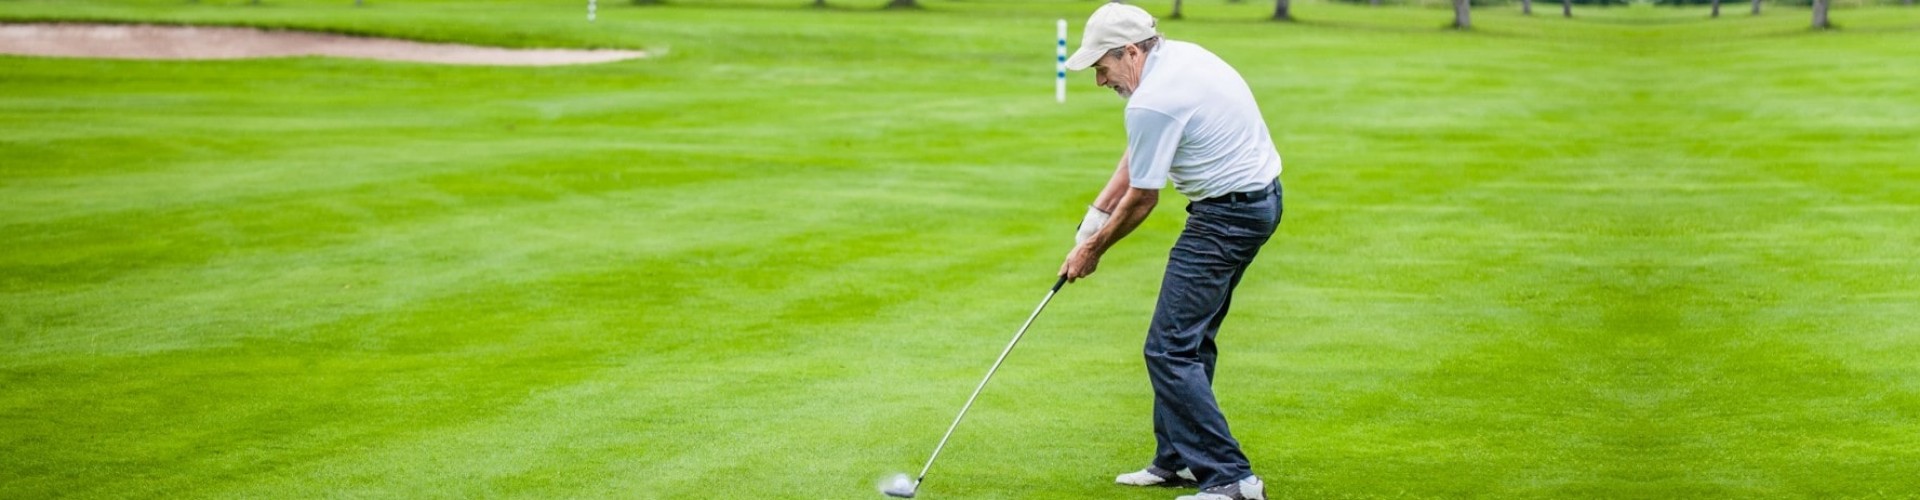 senior man taking a golf swing